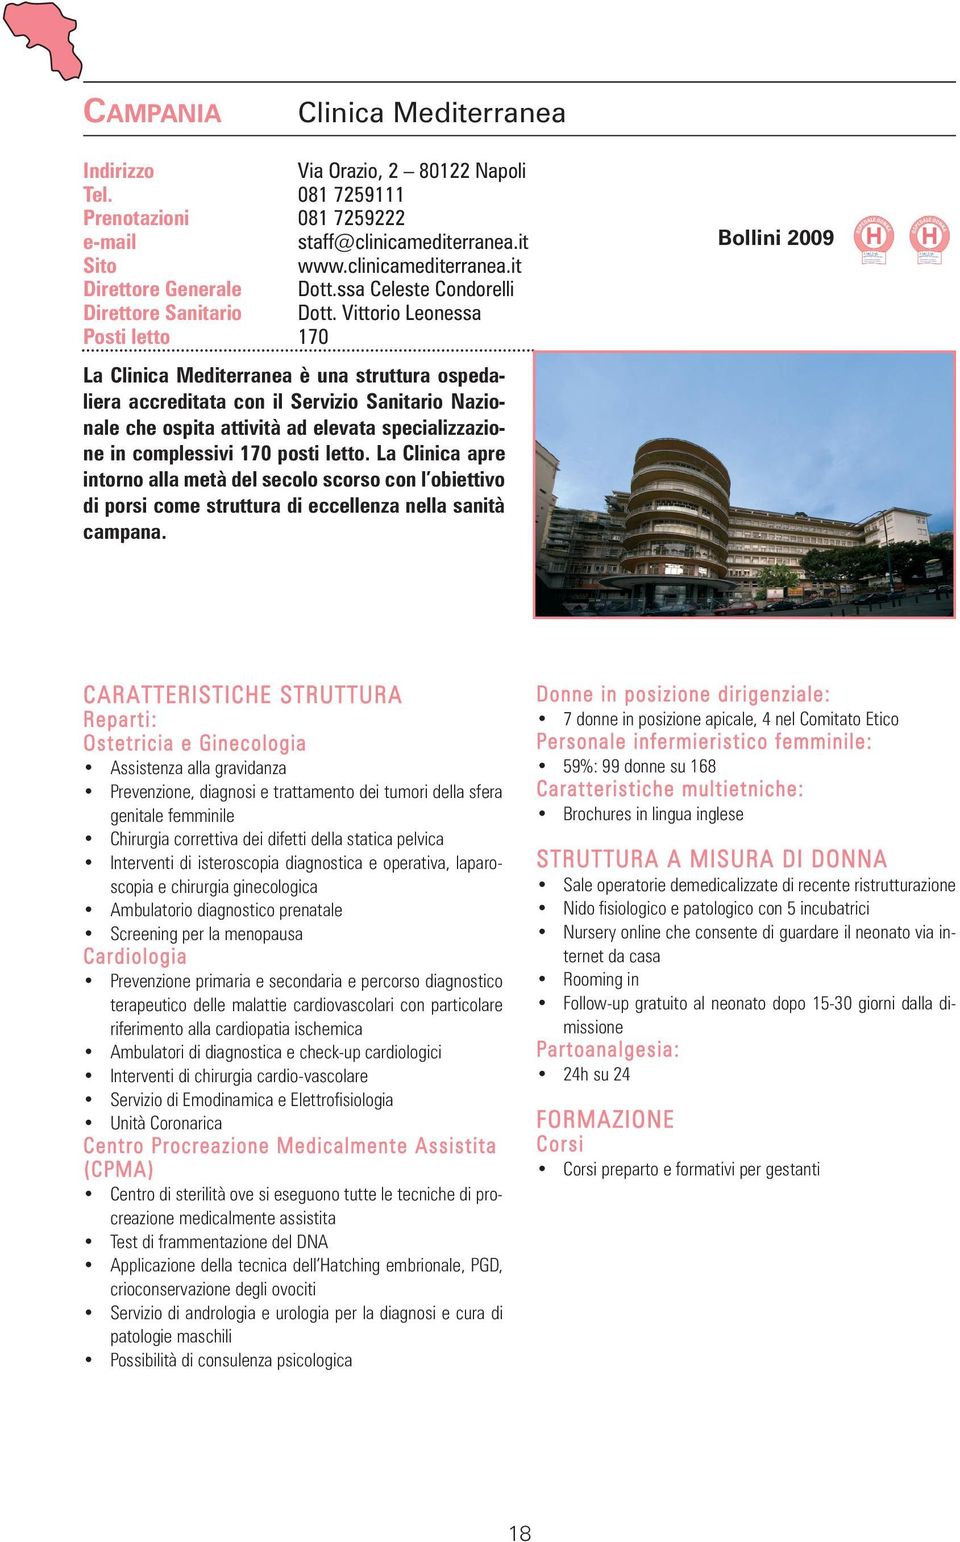 Vittorio Leonessa Posti letto 170 La Clinica Mediterranea è una struttura ospedaliera accreditata con il Servizio Sanitario Nazionale che ospita attività ad elevata specializzazione in complessivi